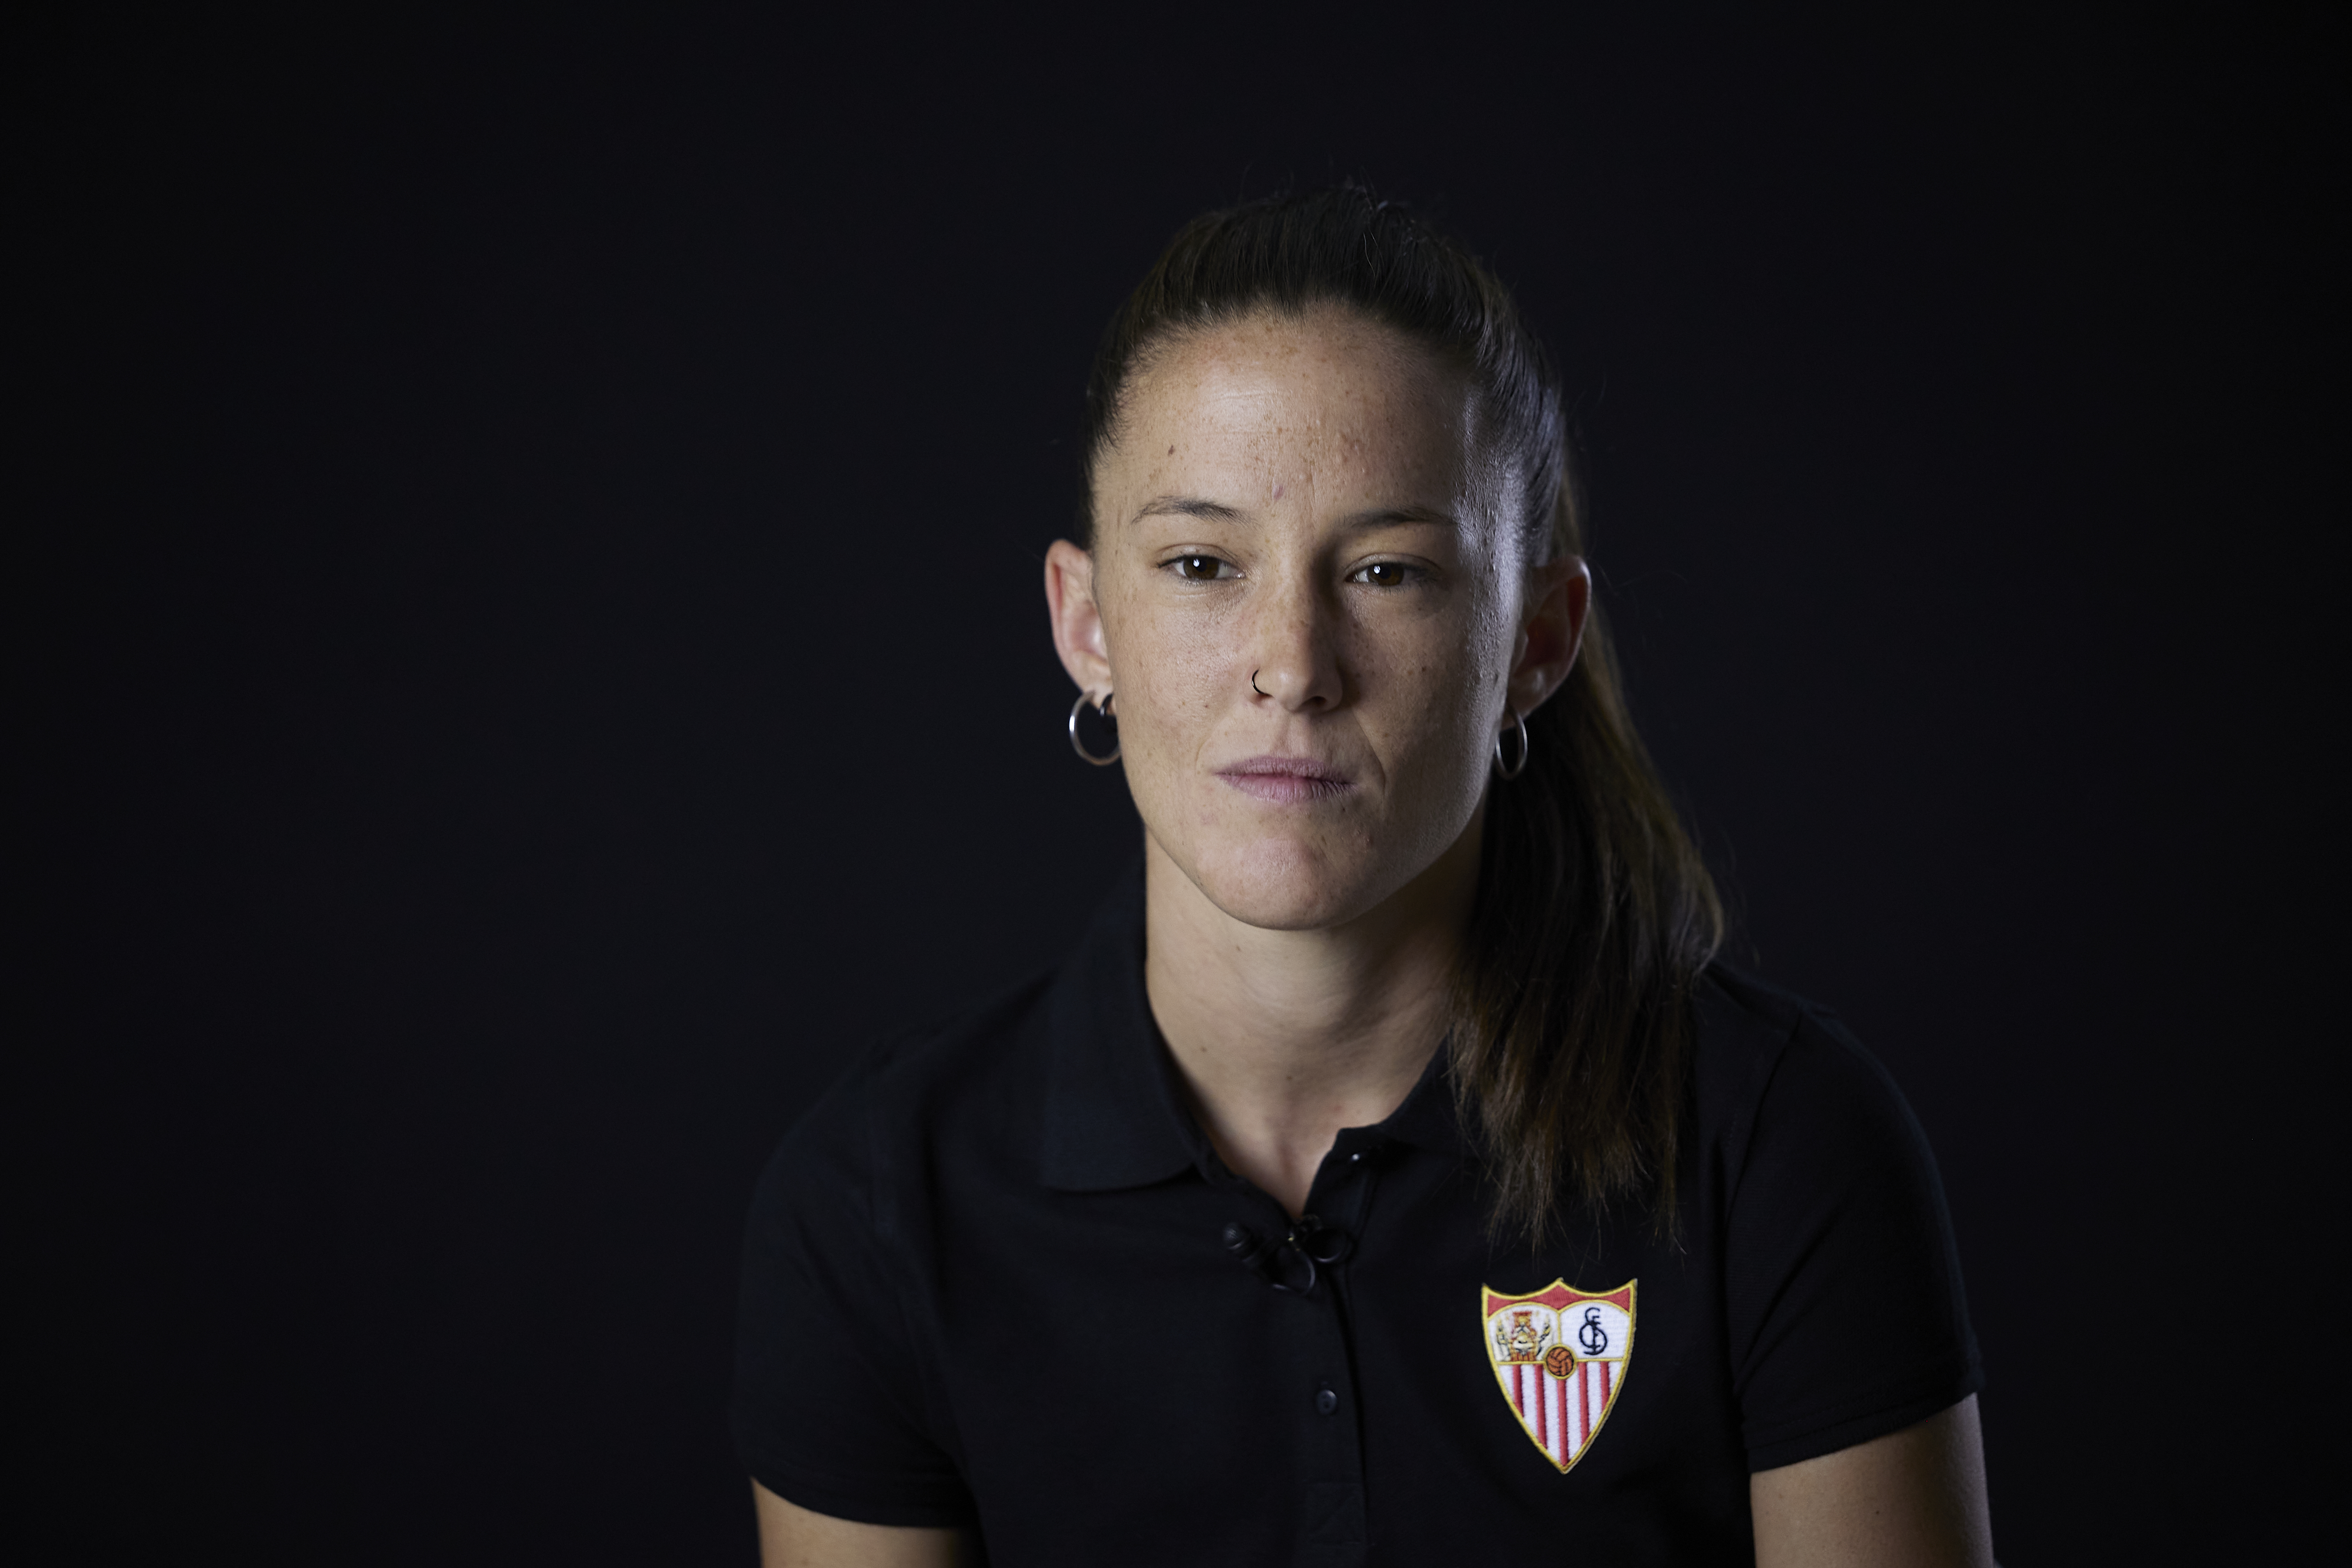 Eva Llamas, Sevilla FC Femenino